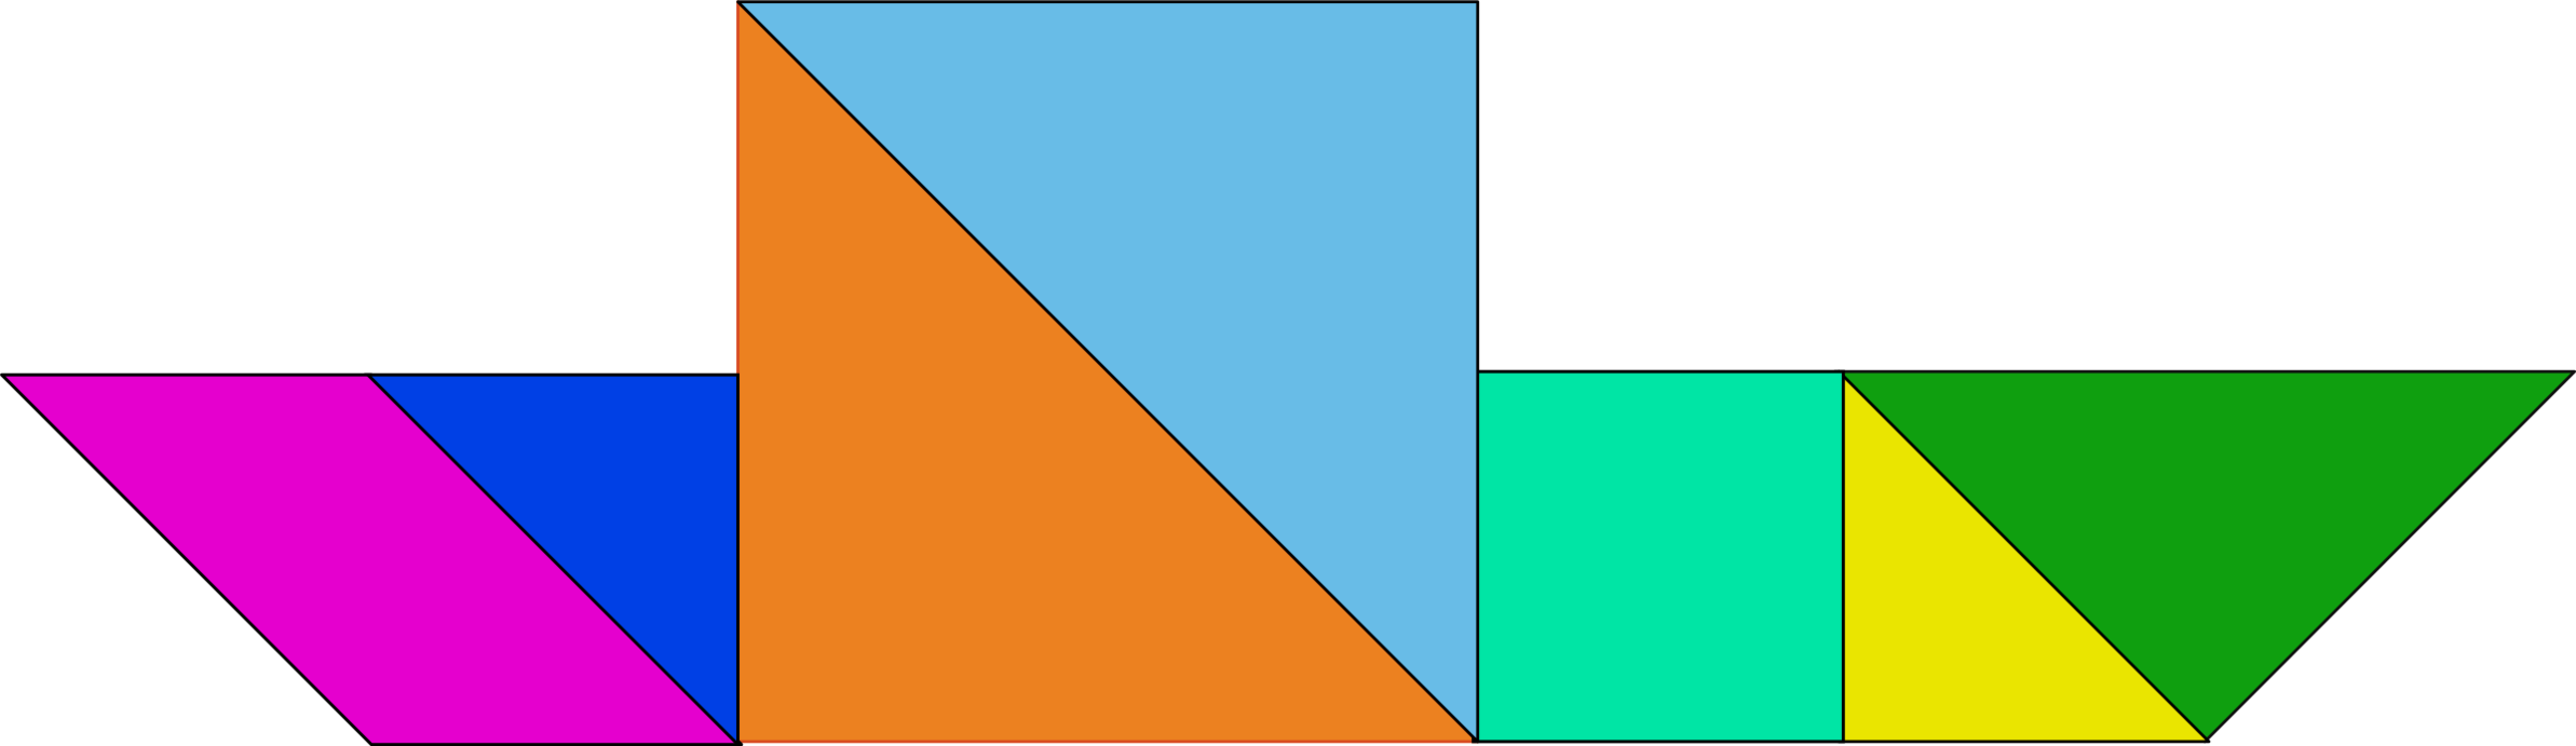 Diagram,Square,Triangle